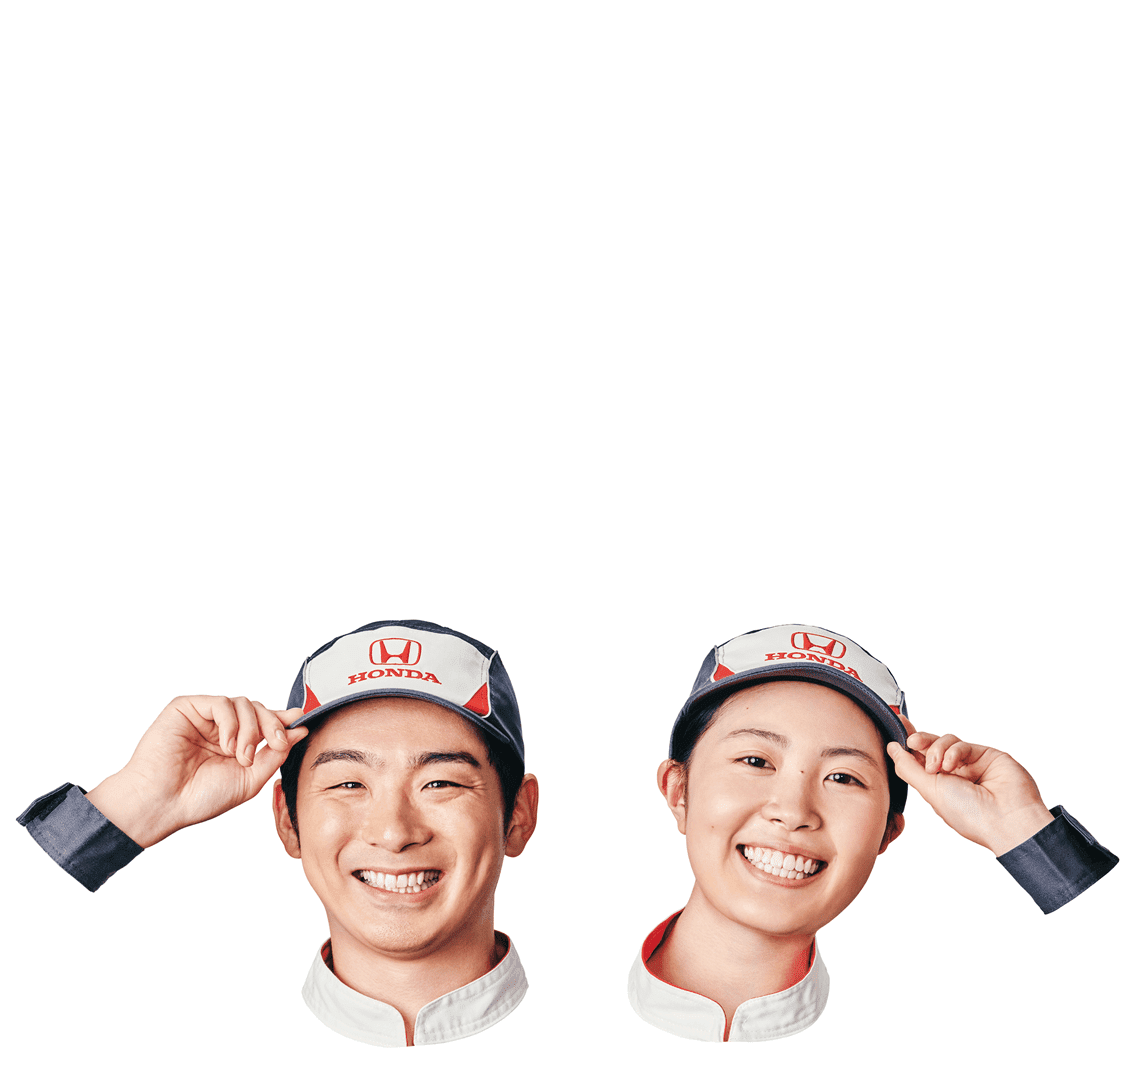 ほんなら、Honda Cars！